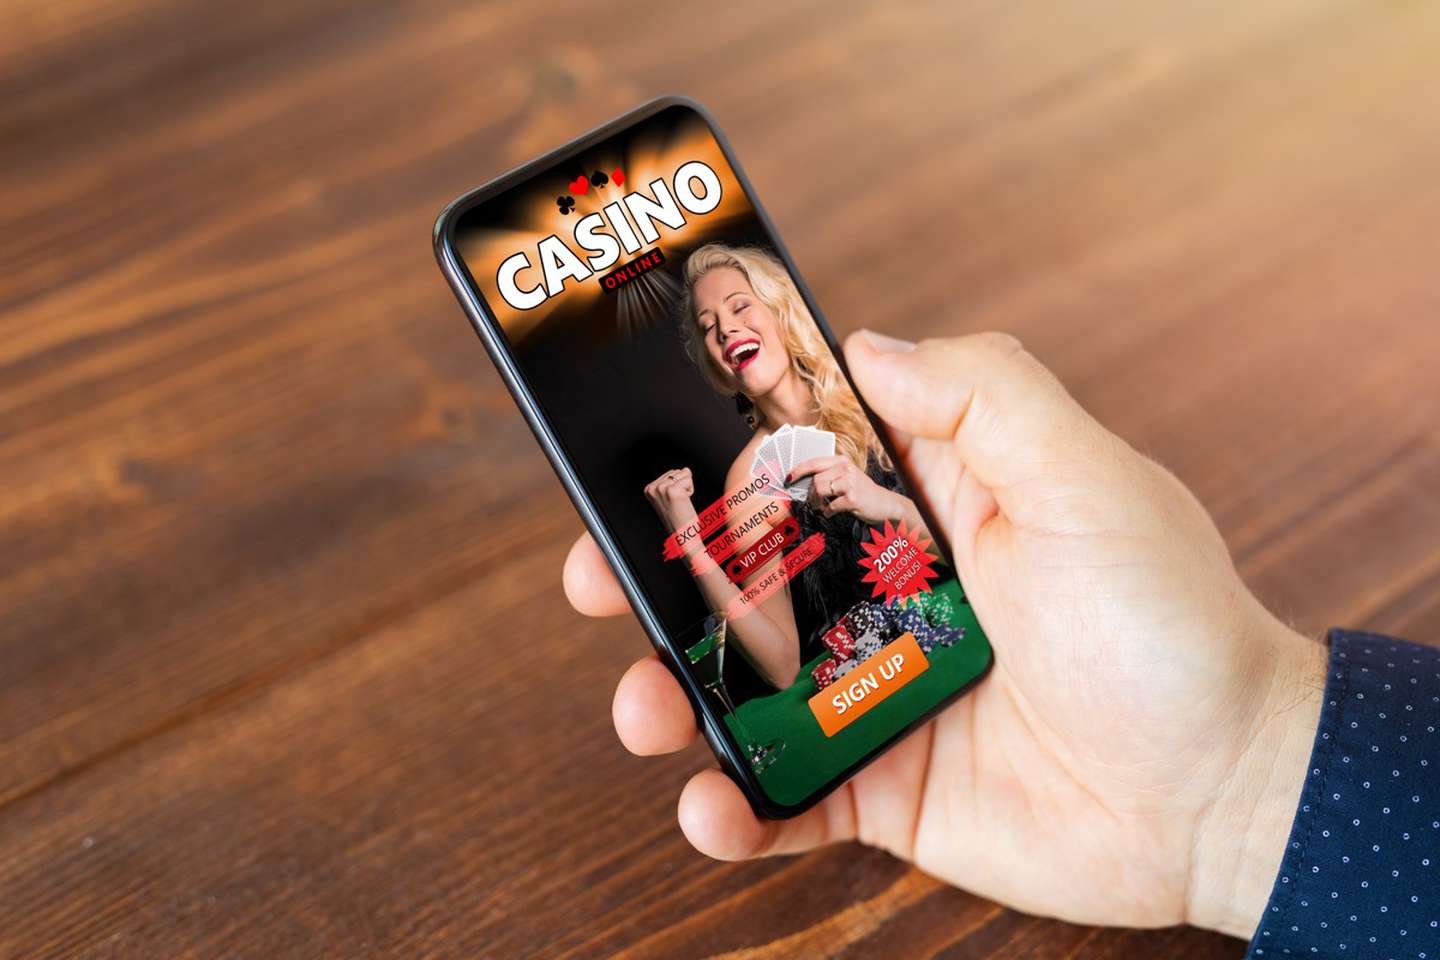 Una app para nenes en iOS escondía un “casino clandestino”